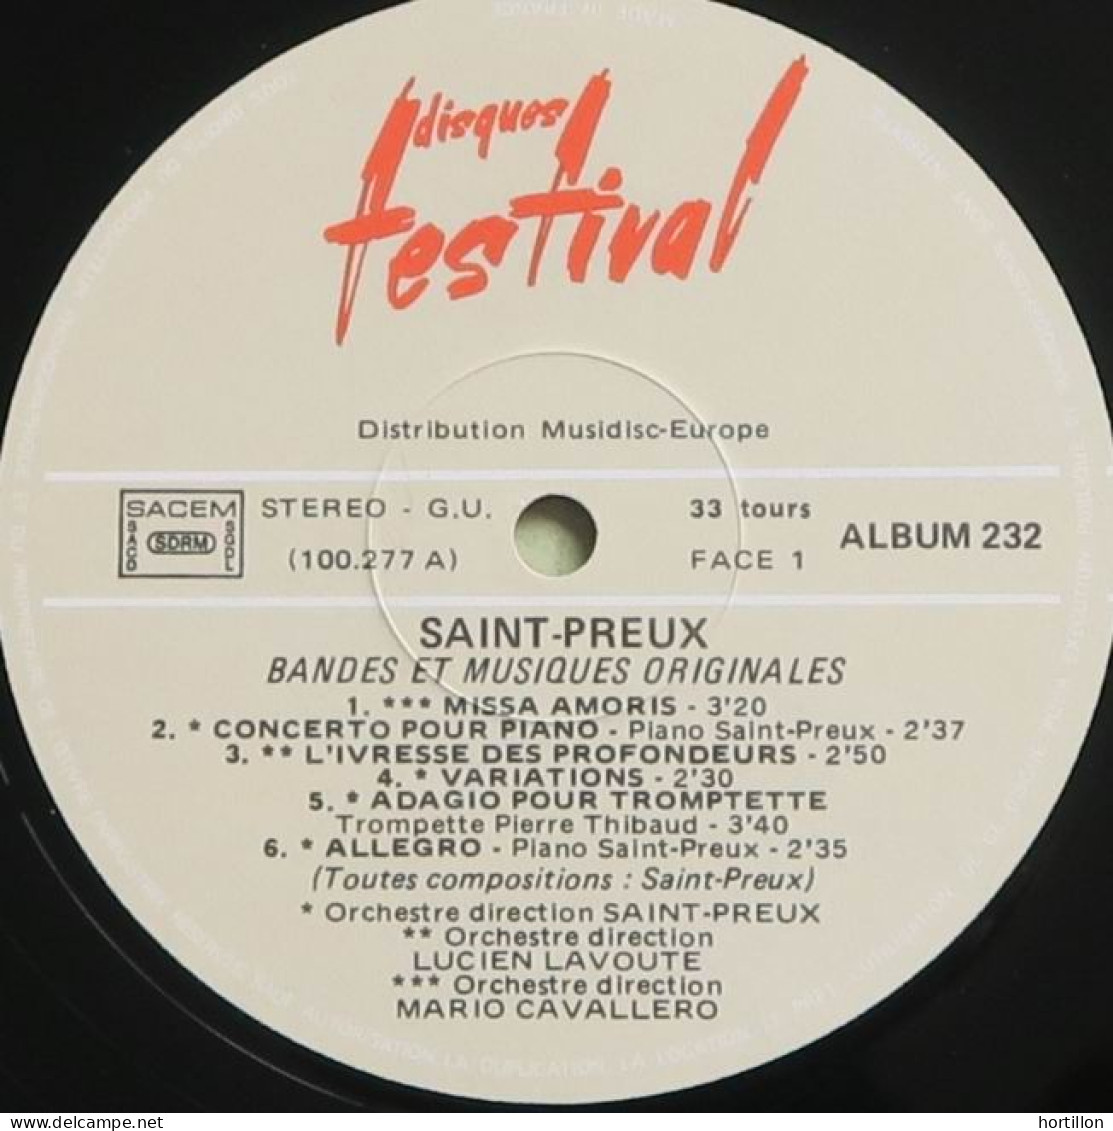 Disque vinyle LP Double 33 tours SAINT-PREUX - CONCERTO POUR UNE VOIX + autres